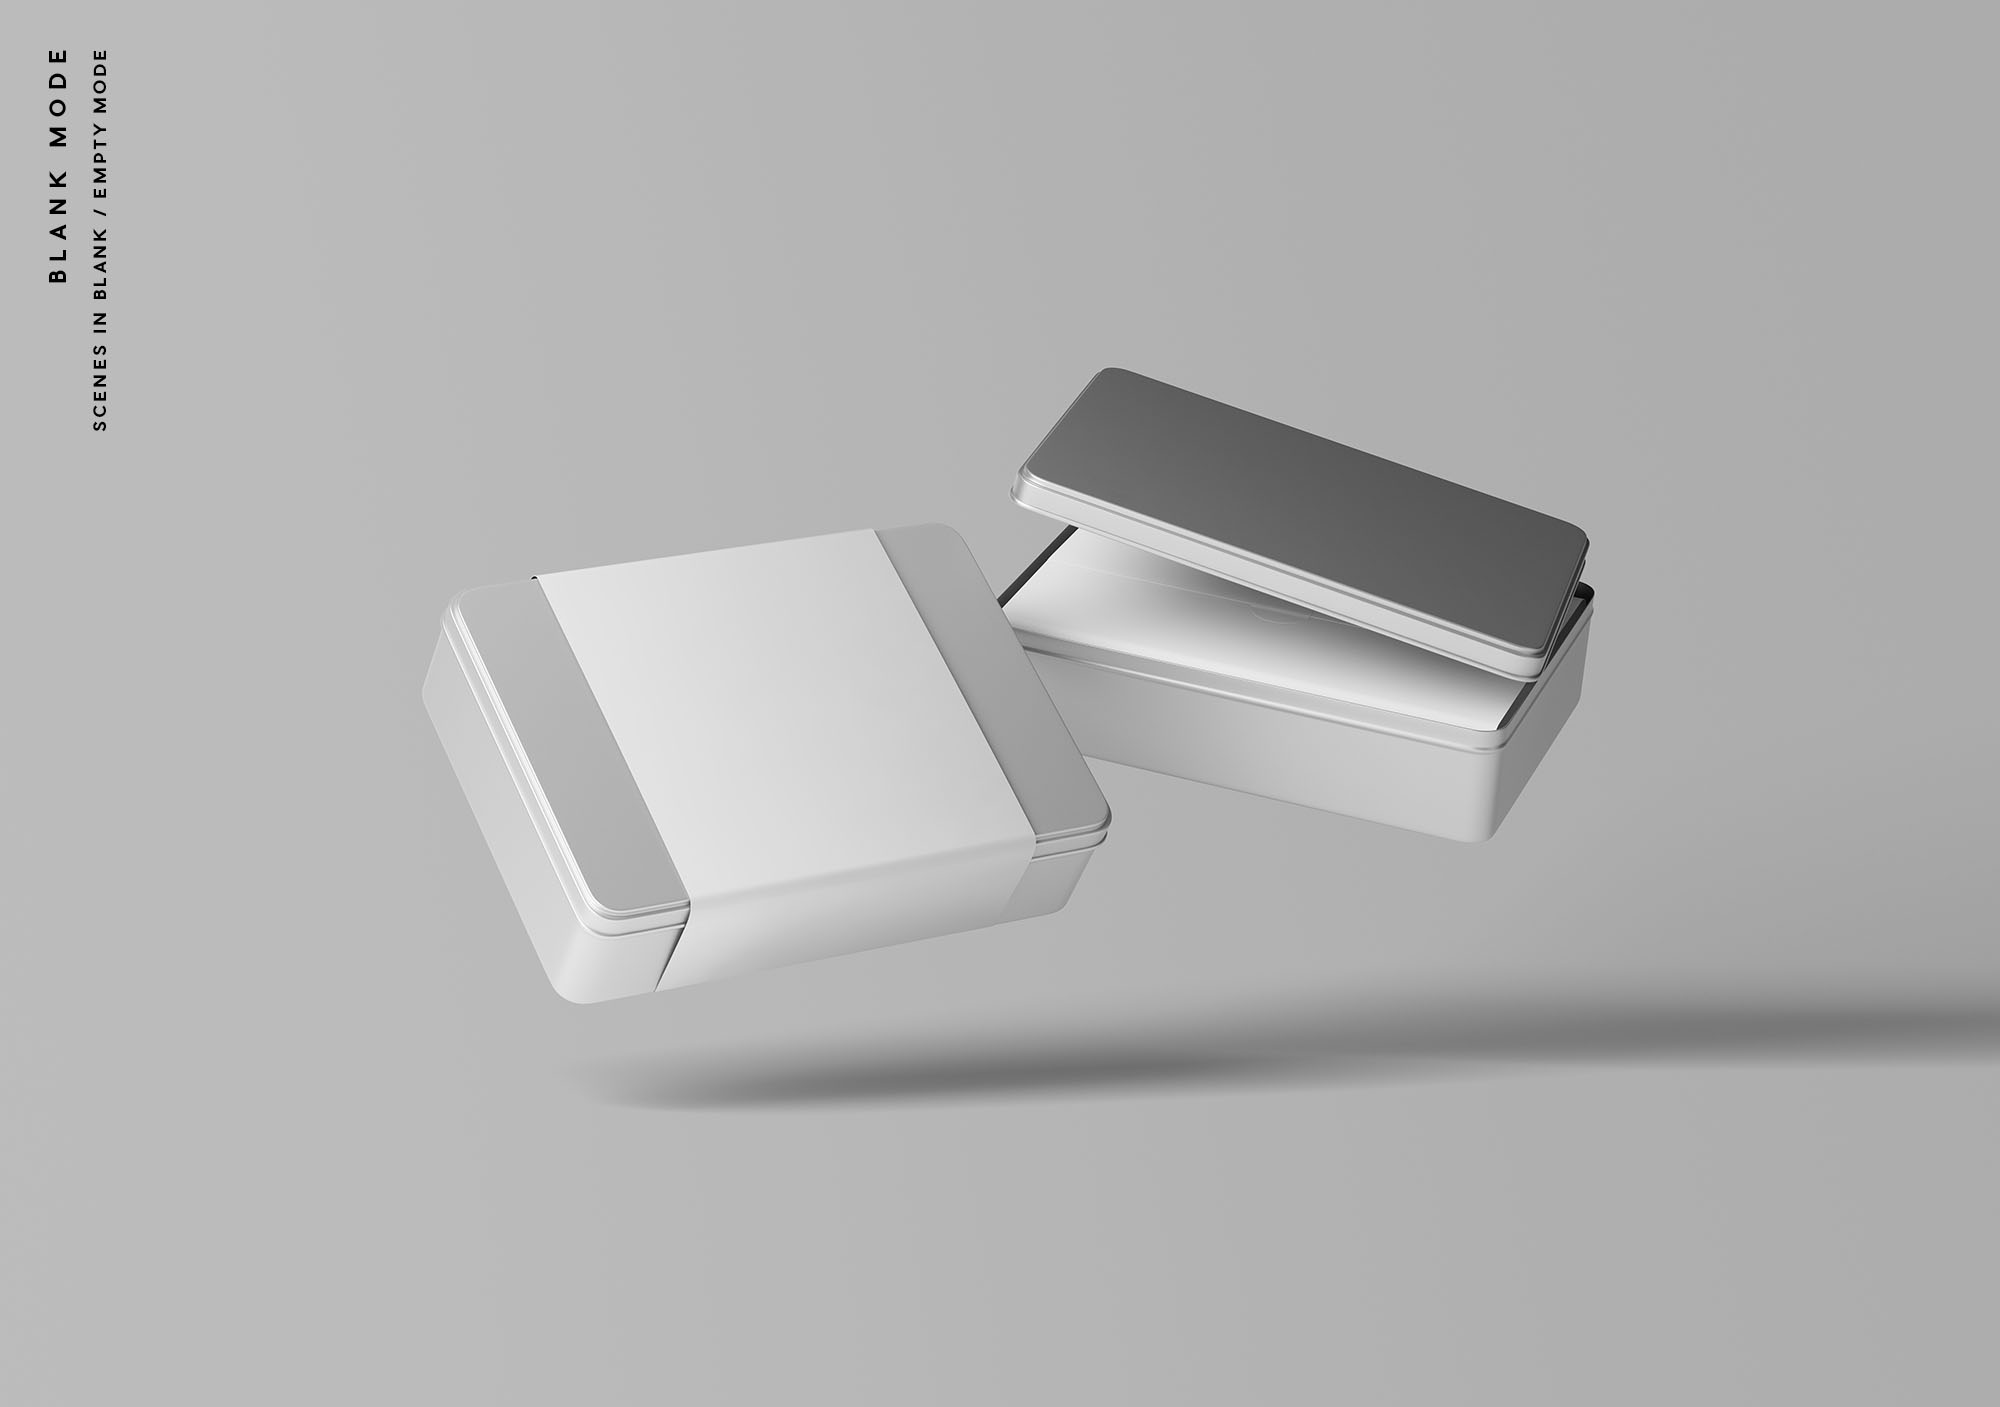 金属盒子产品包装设计贴图样机PSD模板 Metal Box